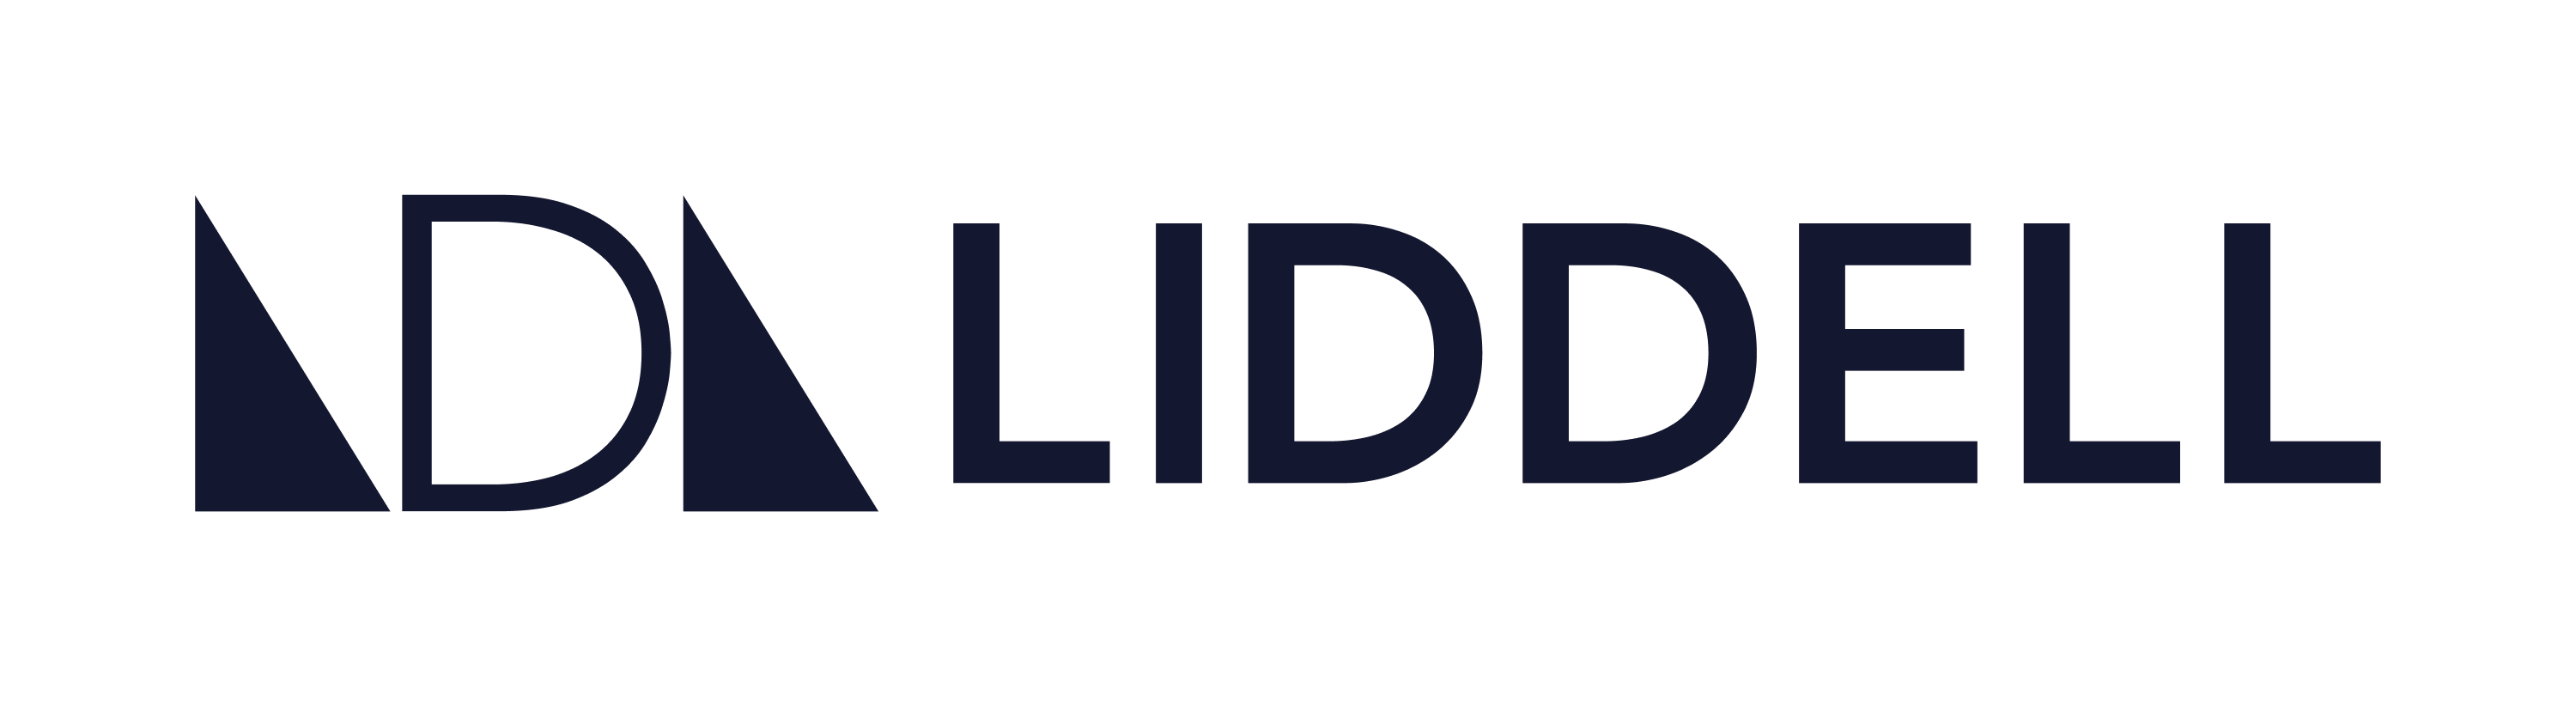 LIDDELL Inc.